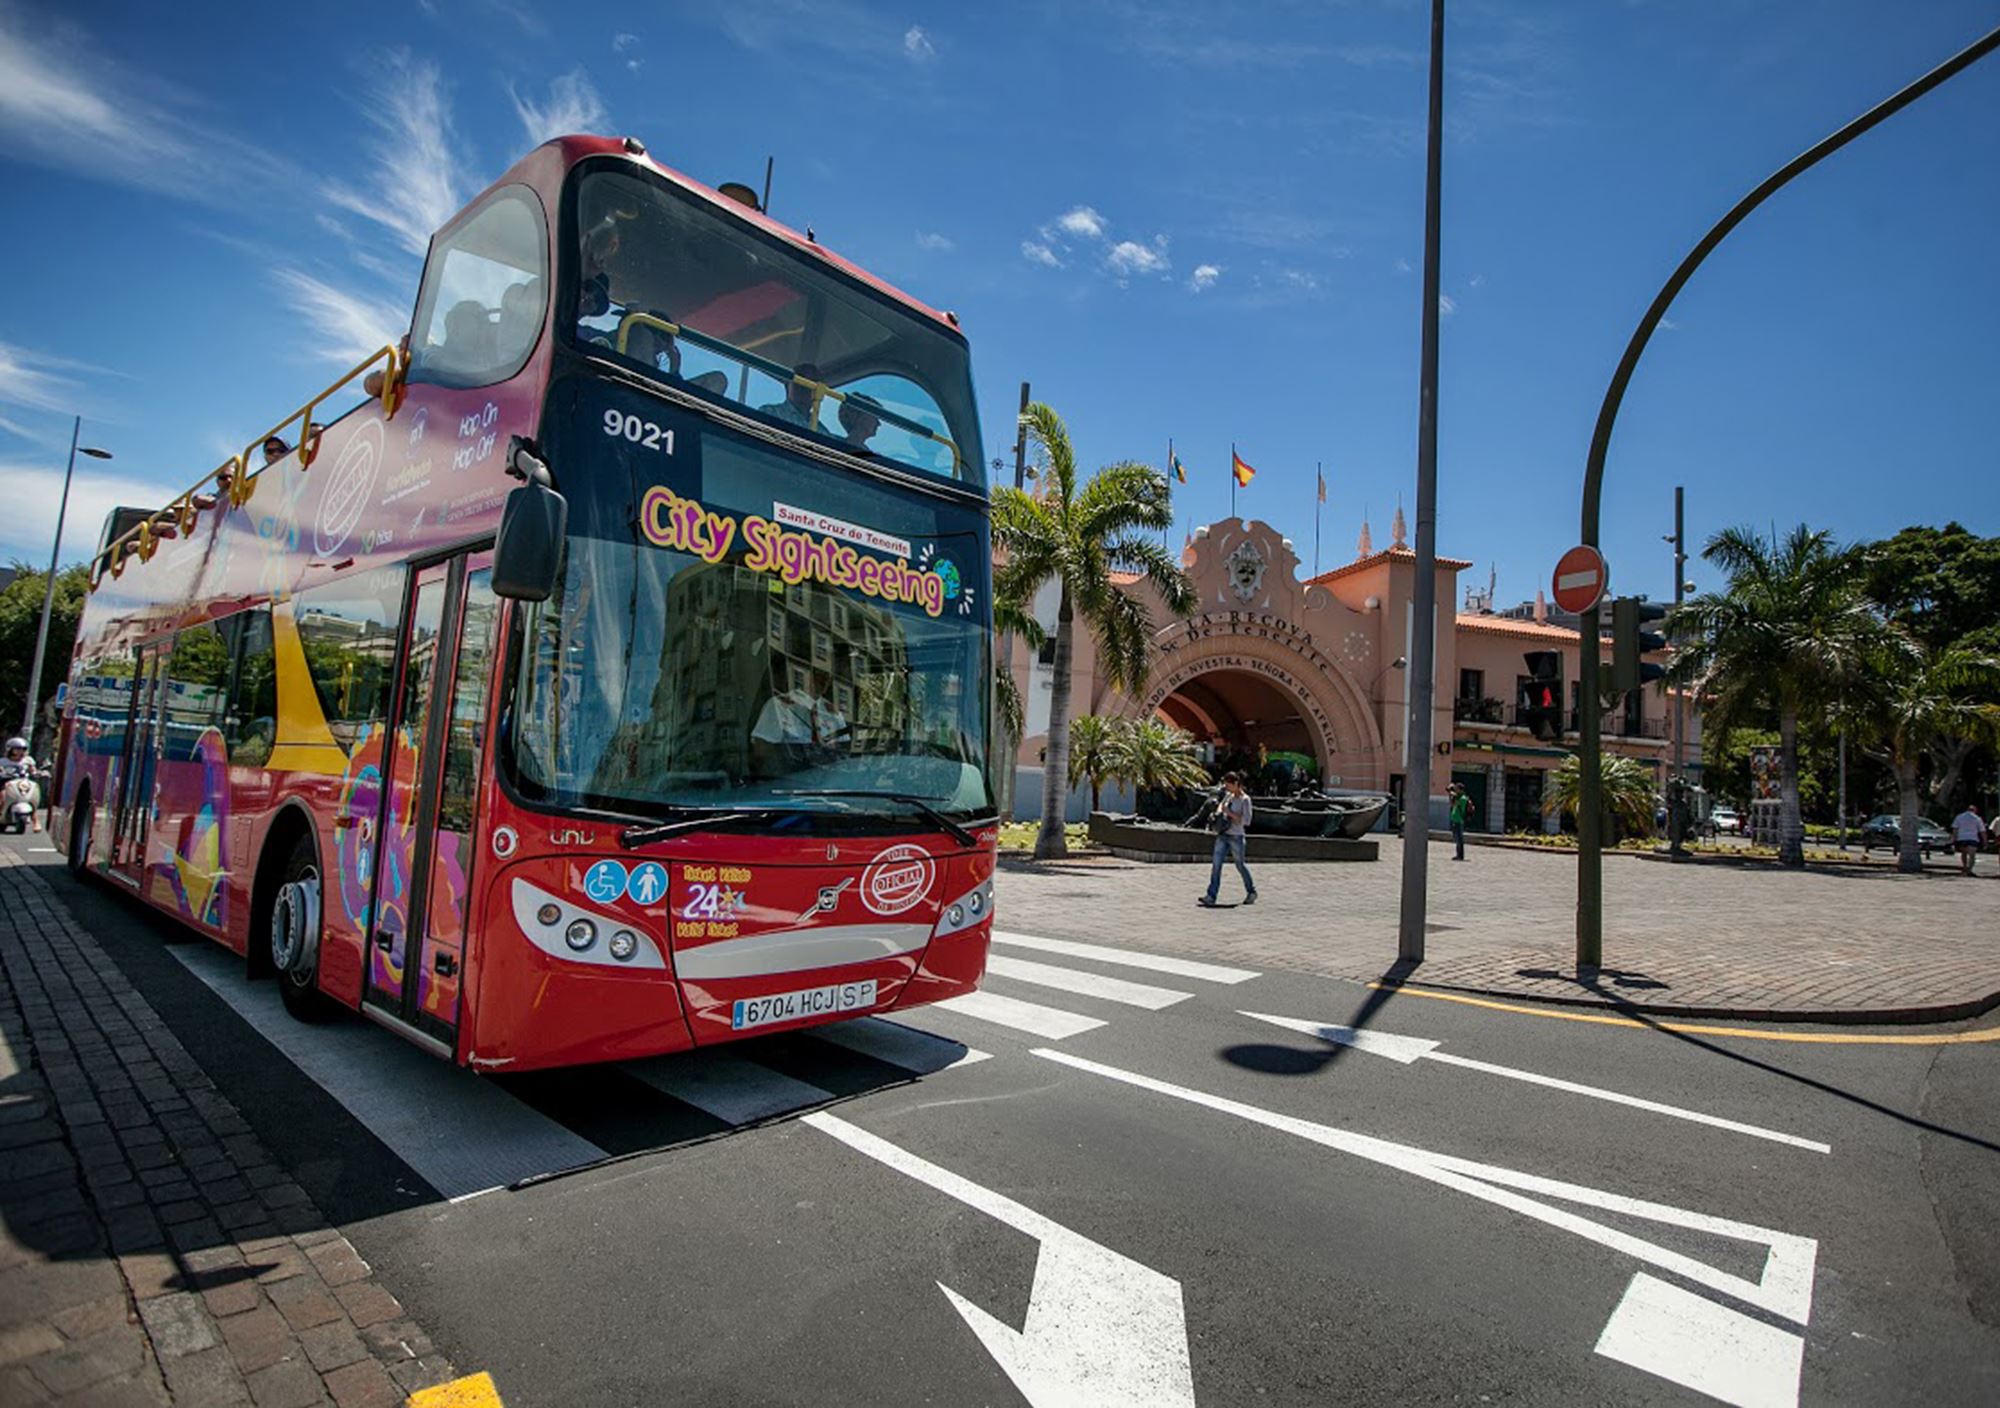 reservieren tickets besucht Touren Fahrkarte Eintrittskarten Touristikbus City Sightseeing Santa Cruz de Tenerife